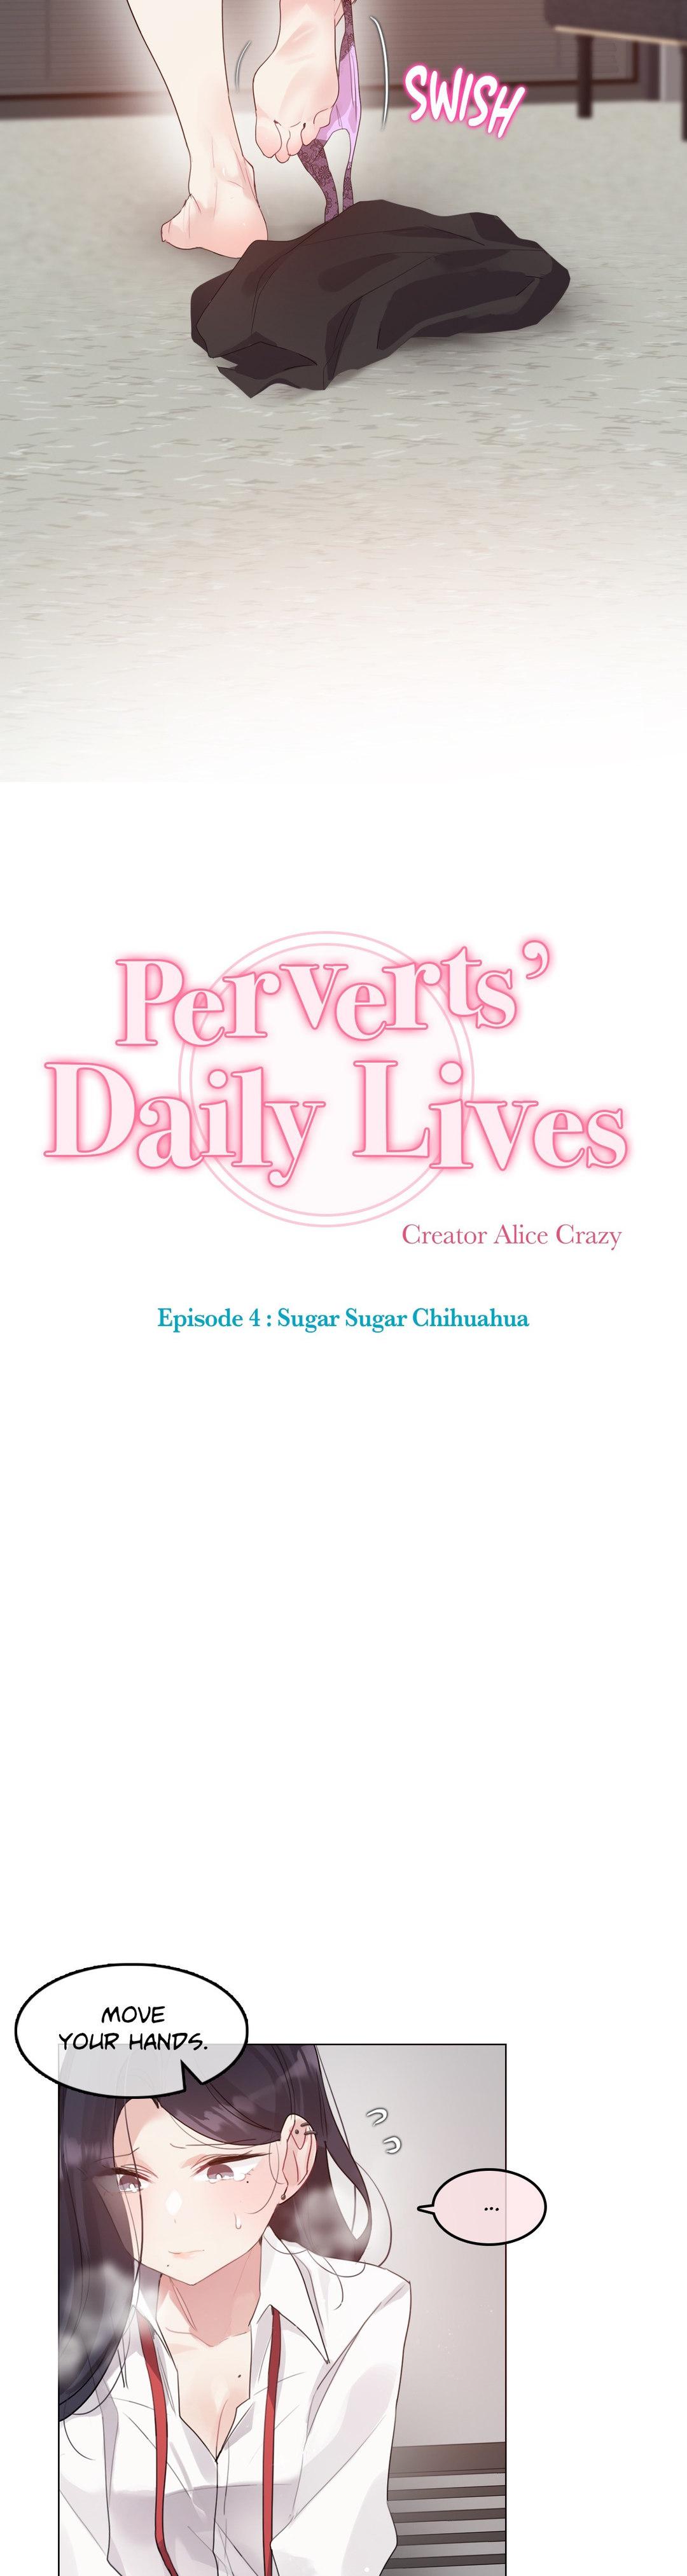 Perverts' Daily Lives Episode 4: Sugar Sugar Chihuahua 60